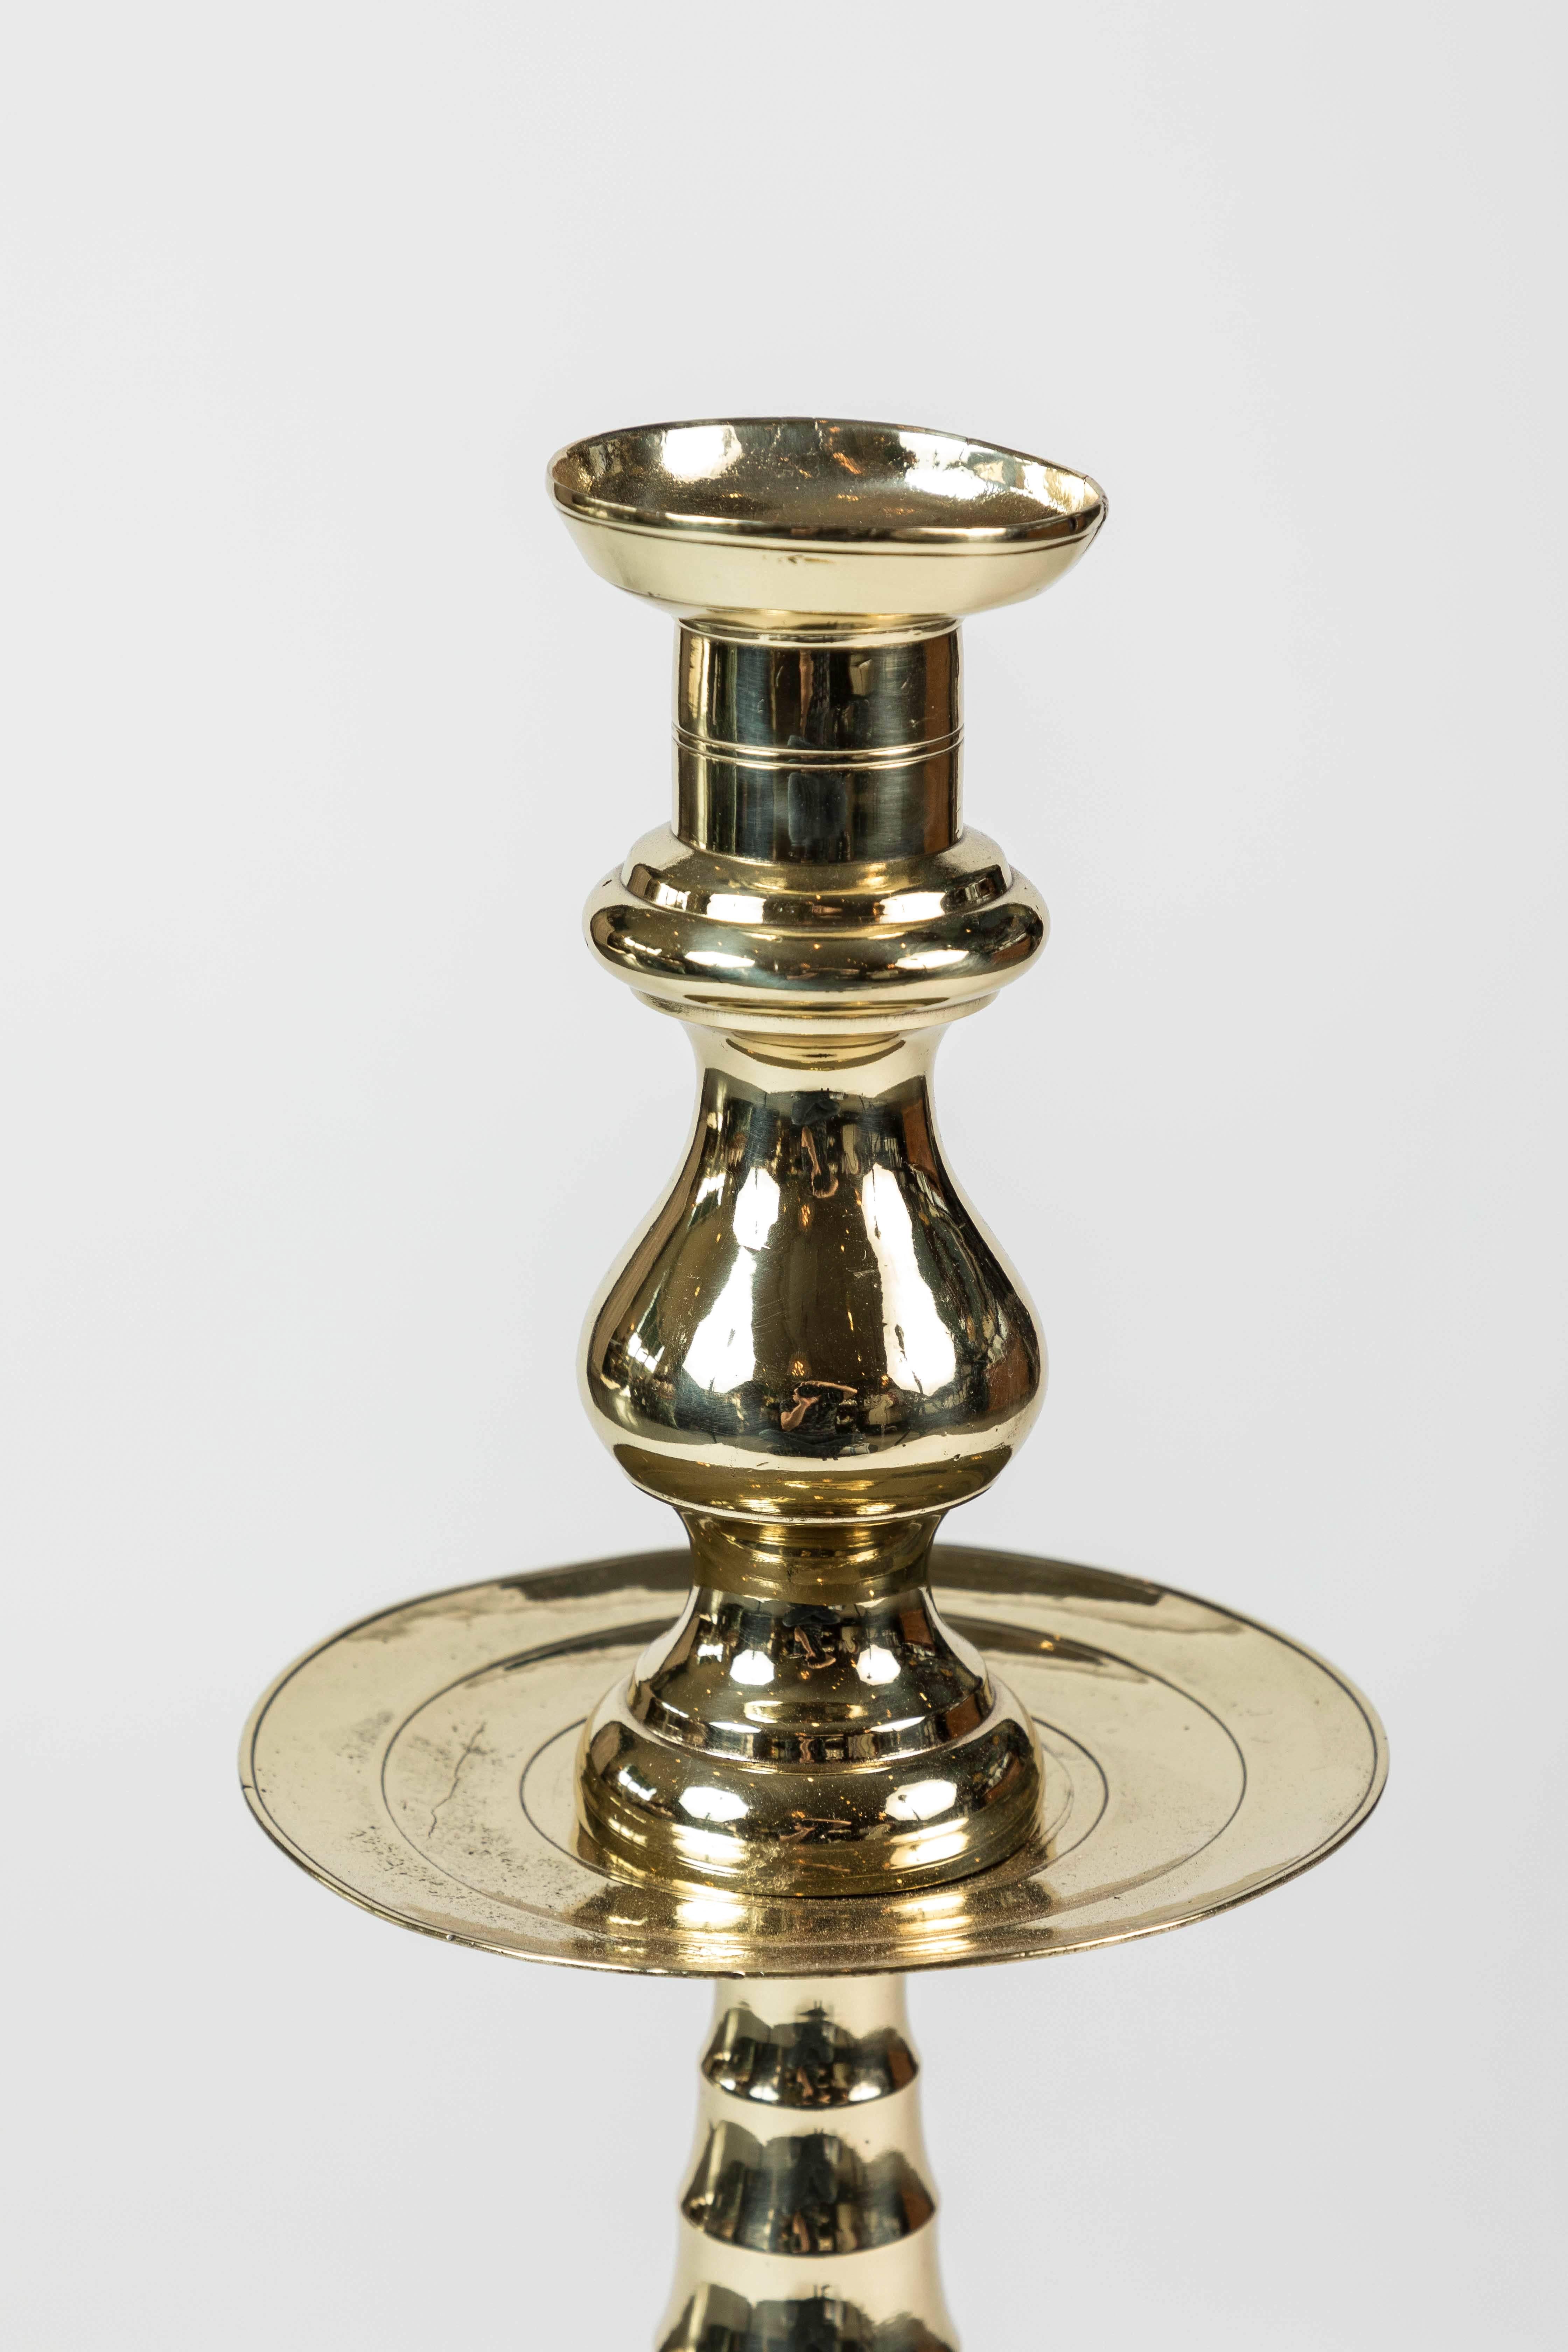 Großer, neu polierter Messing-Kerzenhalter mit bienenstockförmigem Stiel und Sockel und einfachen Wachsfängern, um 1850-1900.